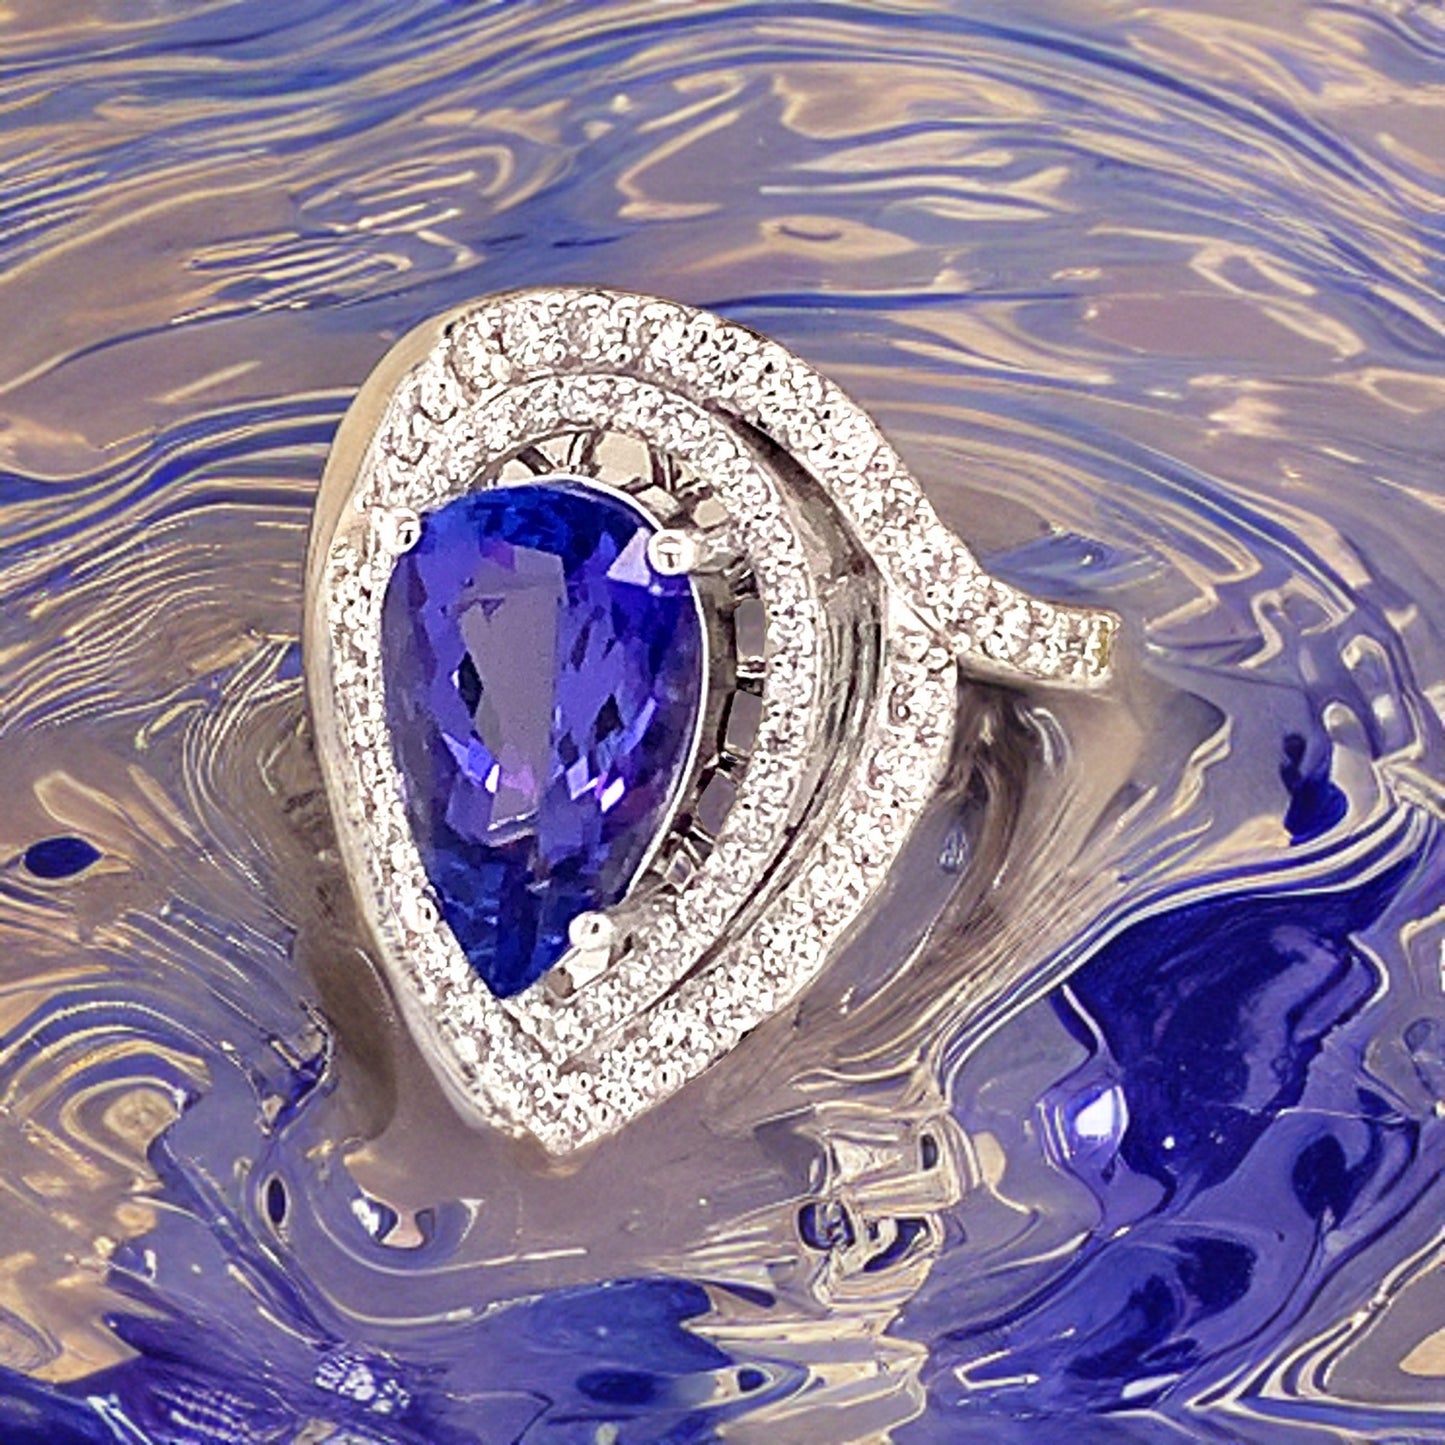 Natural Tanzanite Diamond Ring 14k Gold 4.54 TCW GIA Certified $5,950 111877